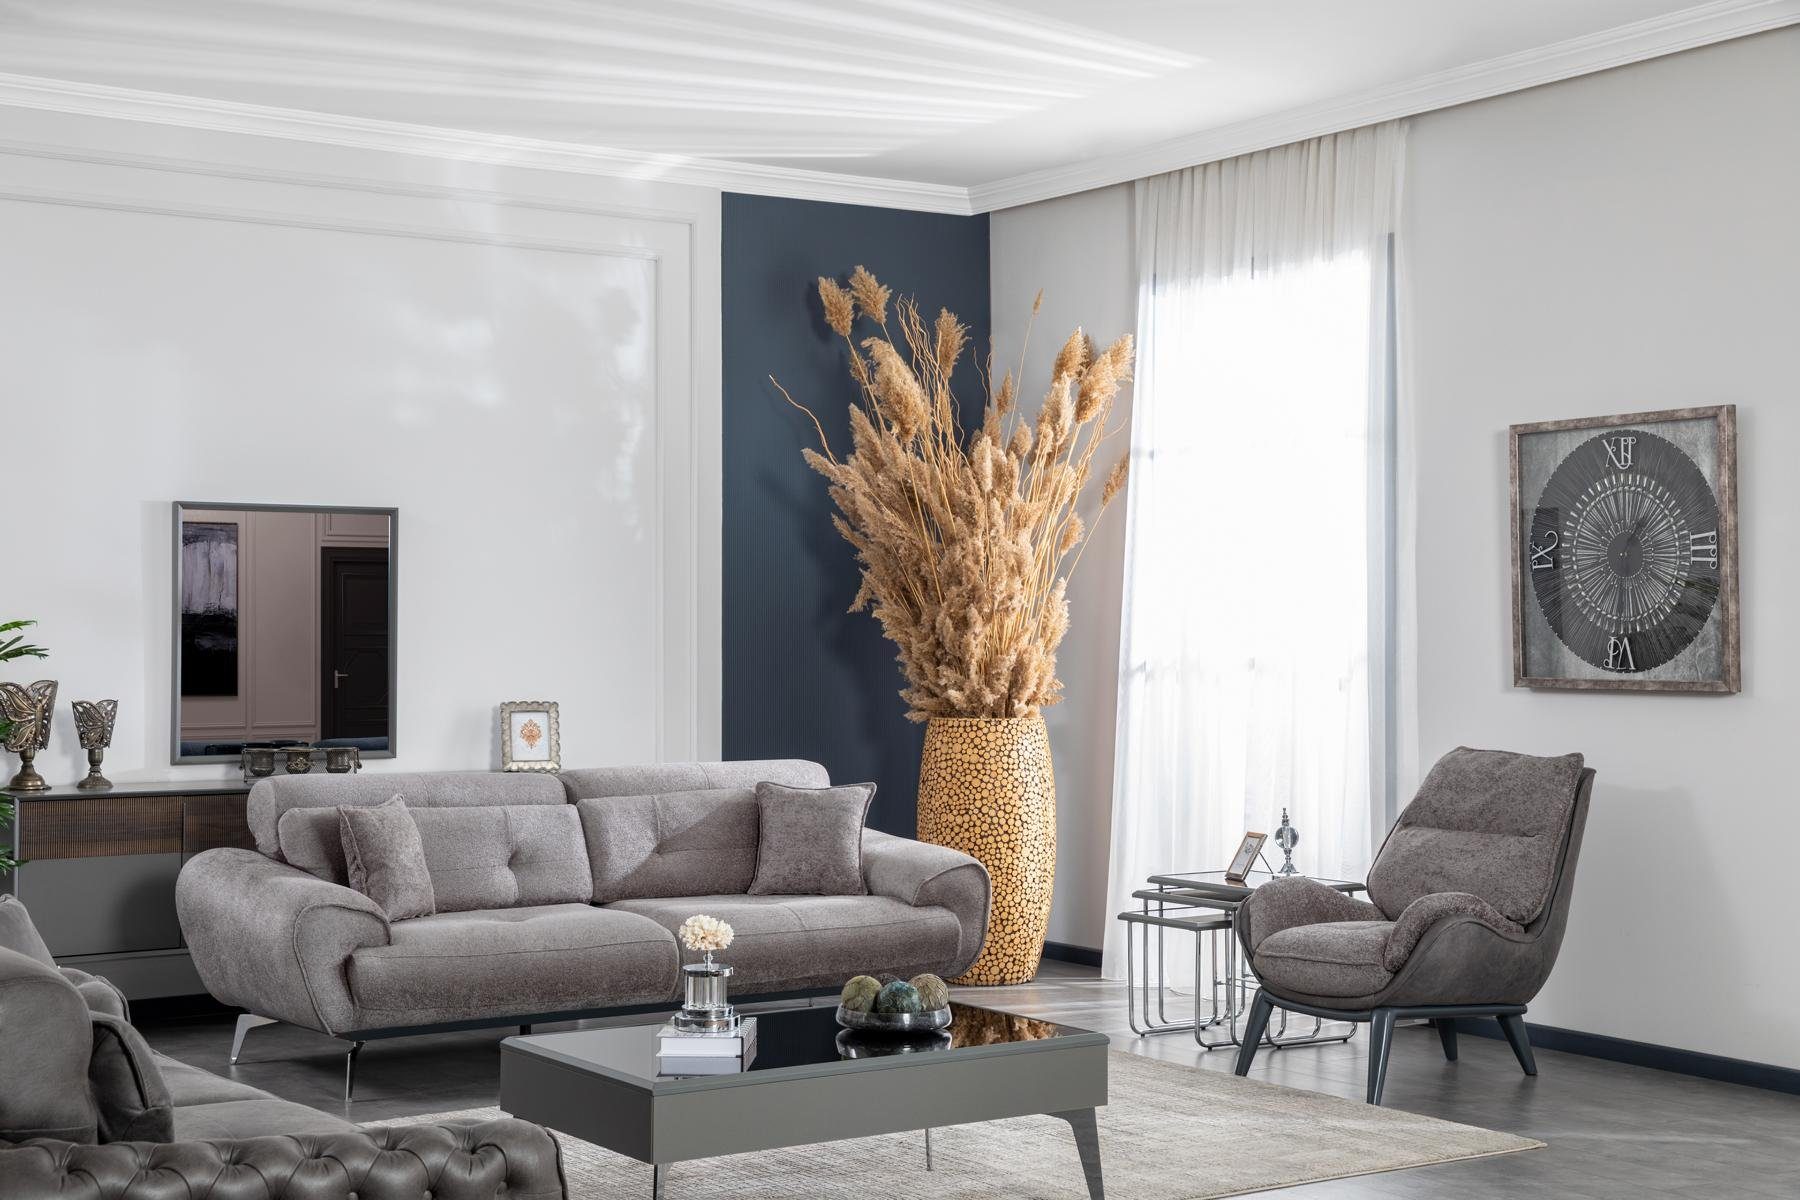 JVmoebel Sofa Italienische Stil Europe Luxus in Design, Made Sofa Wohnzimmer